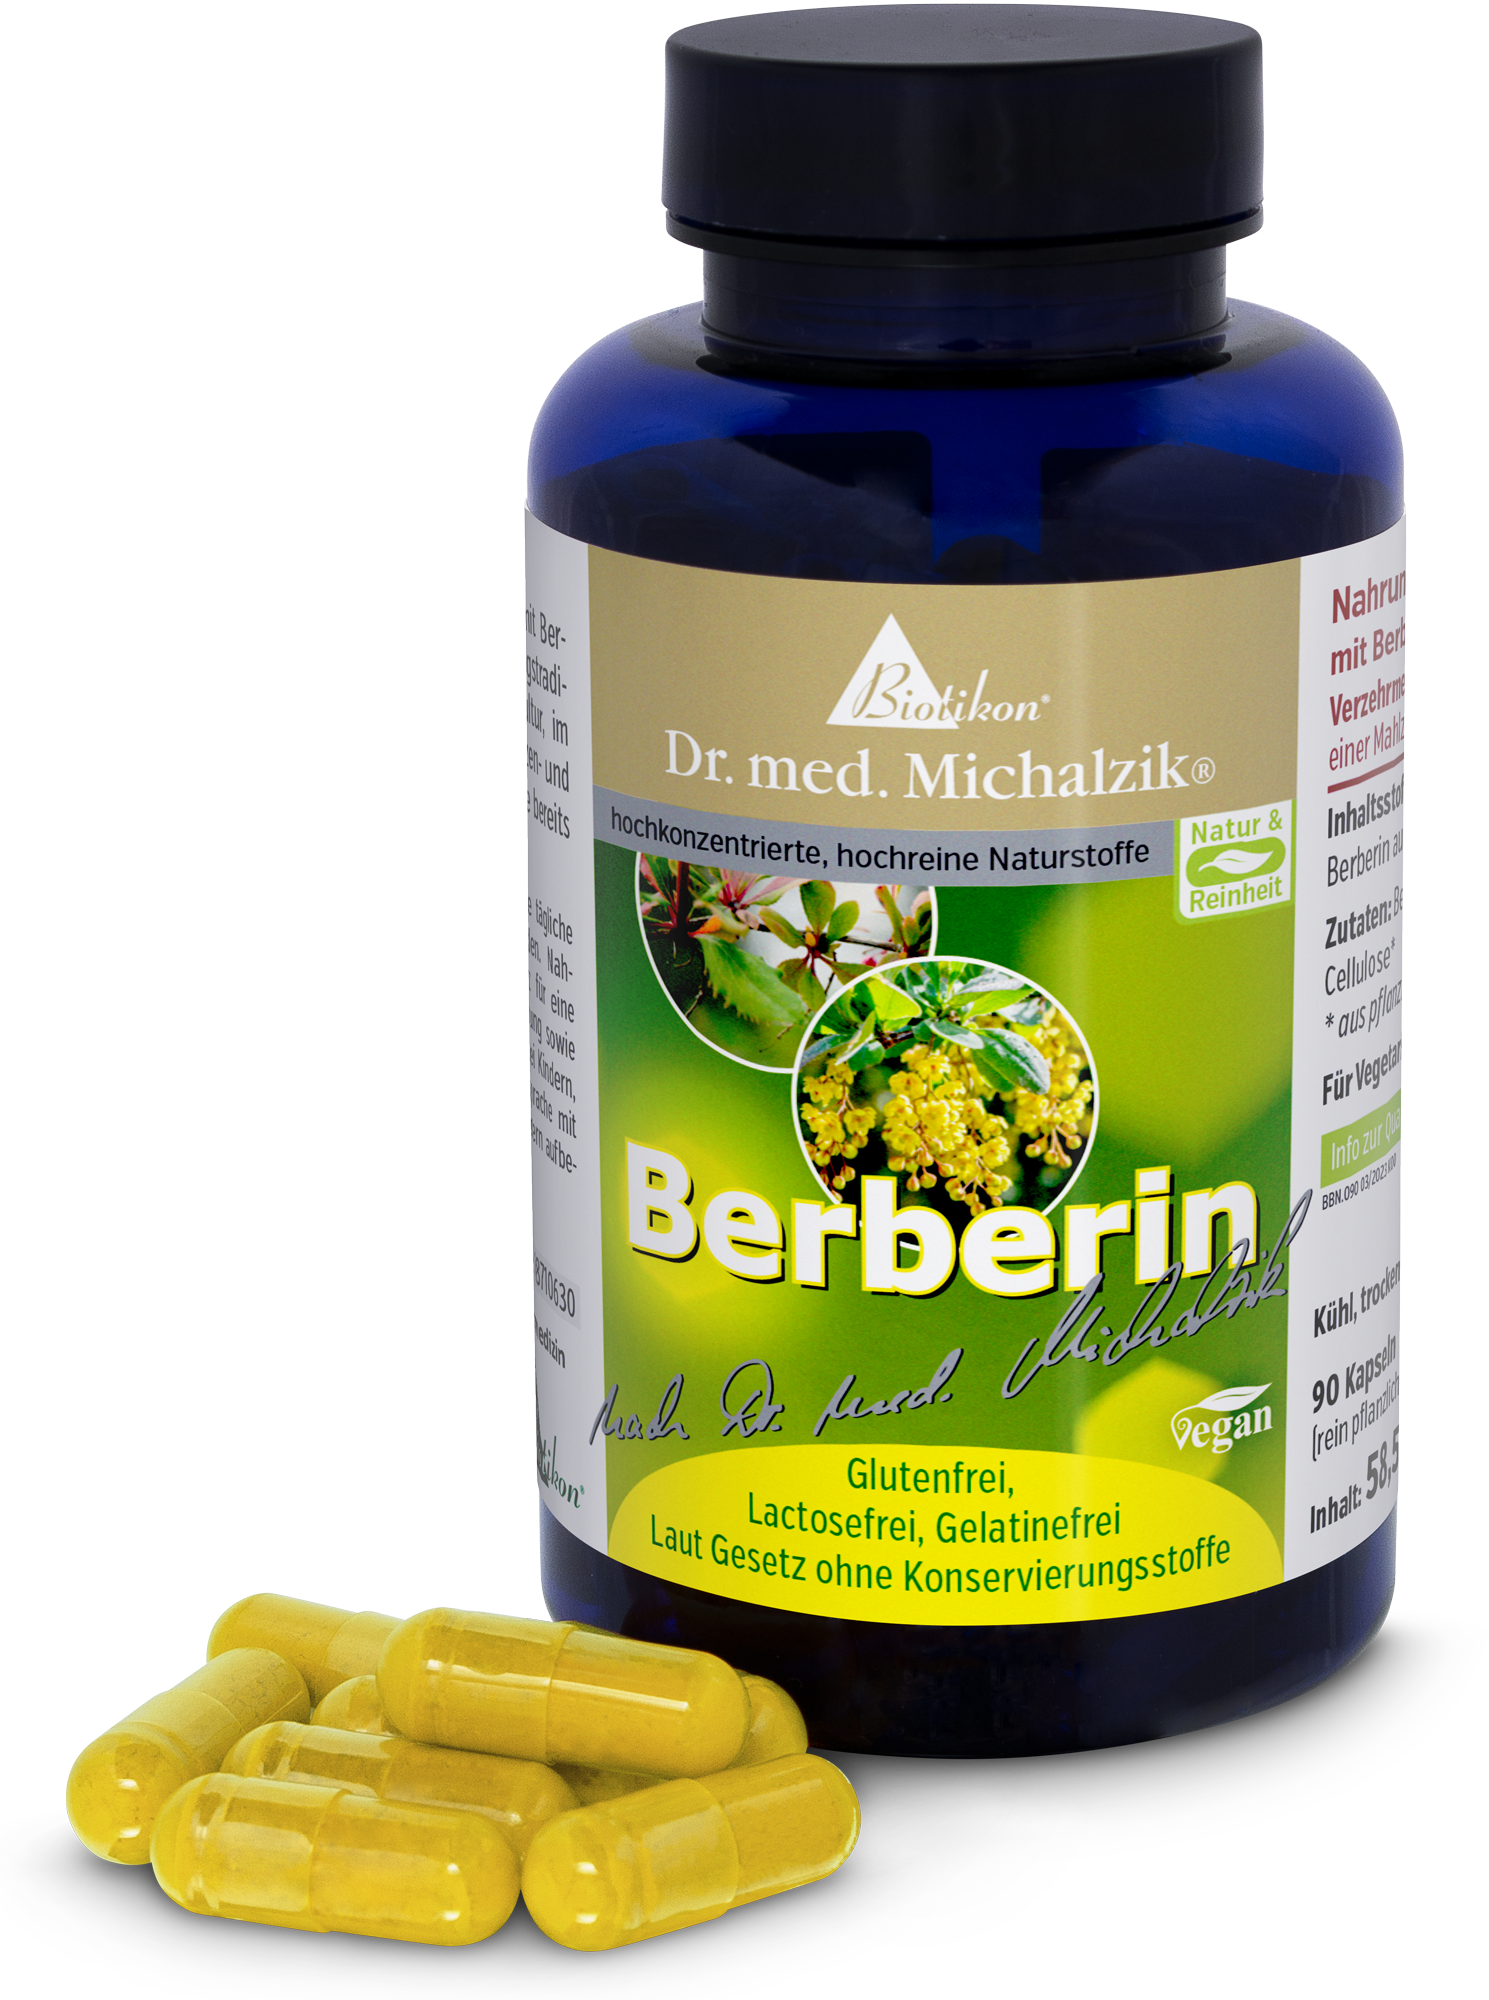 Berberine by Dr. med. Michalzik